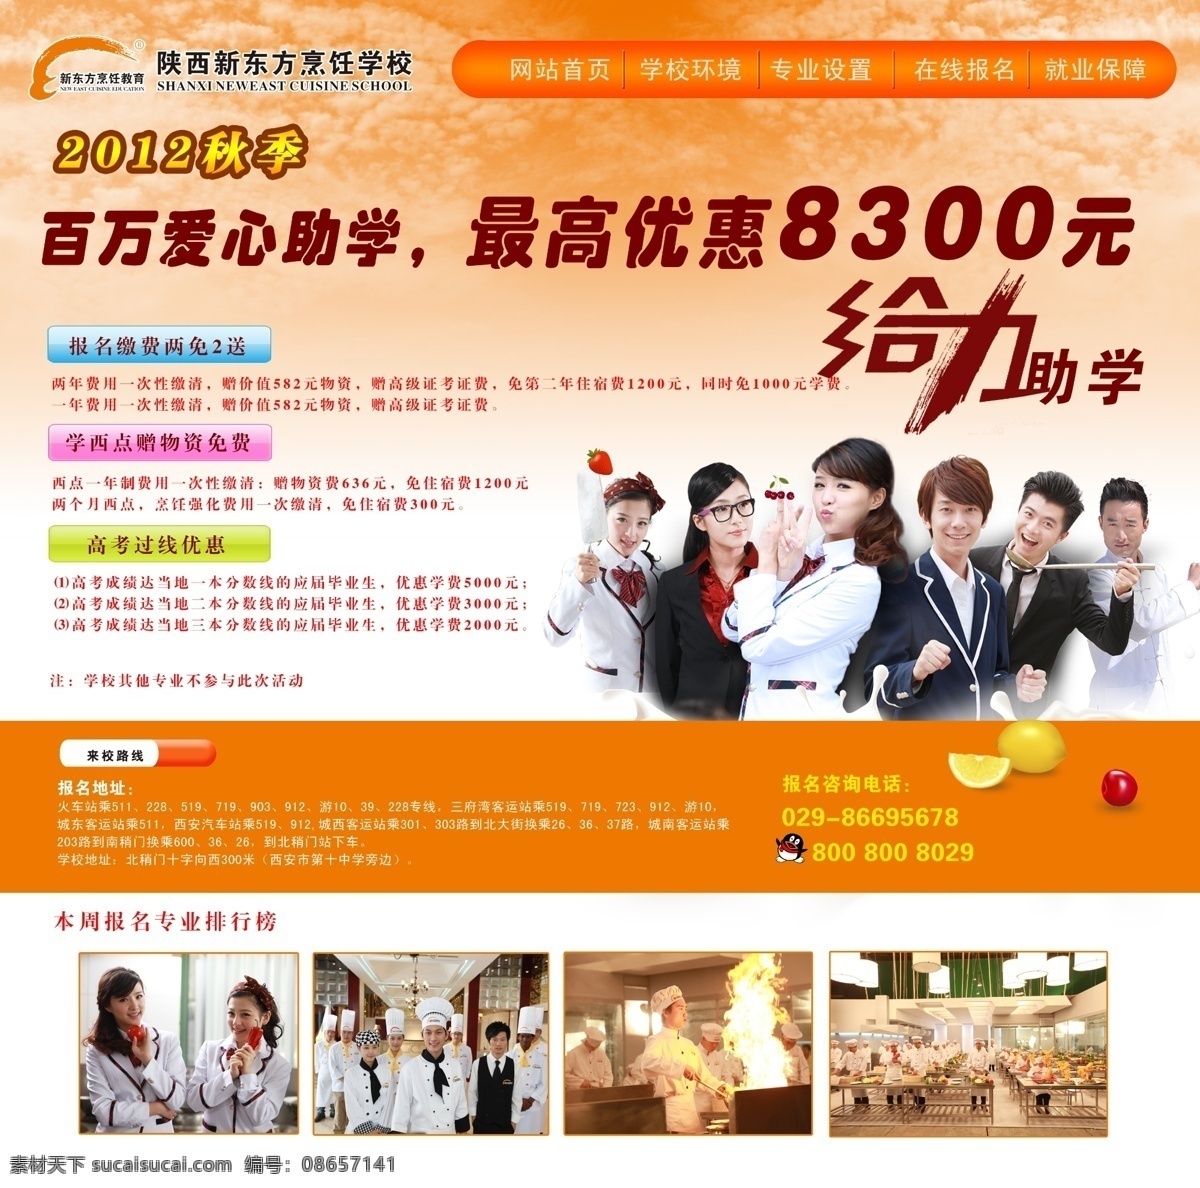 新东方 烹饪学校 网页 网页模板 学校 源文件 中文模版 网页素材